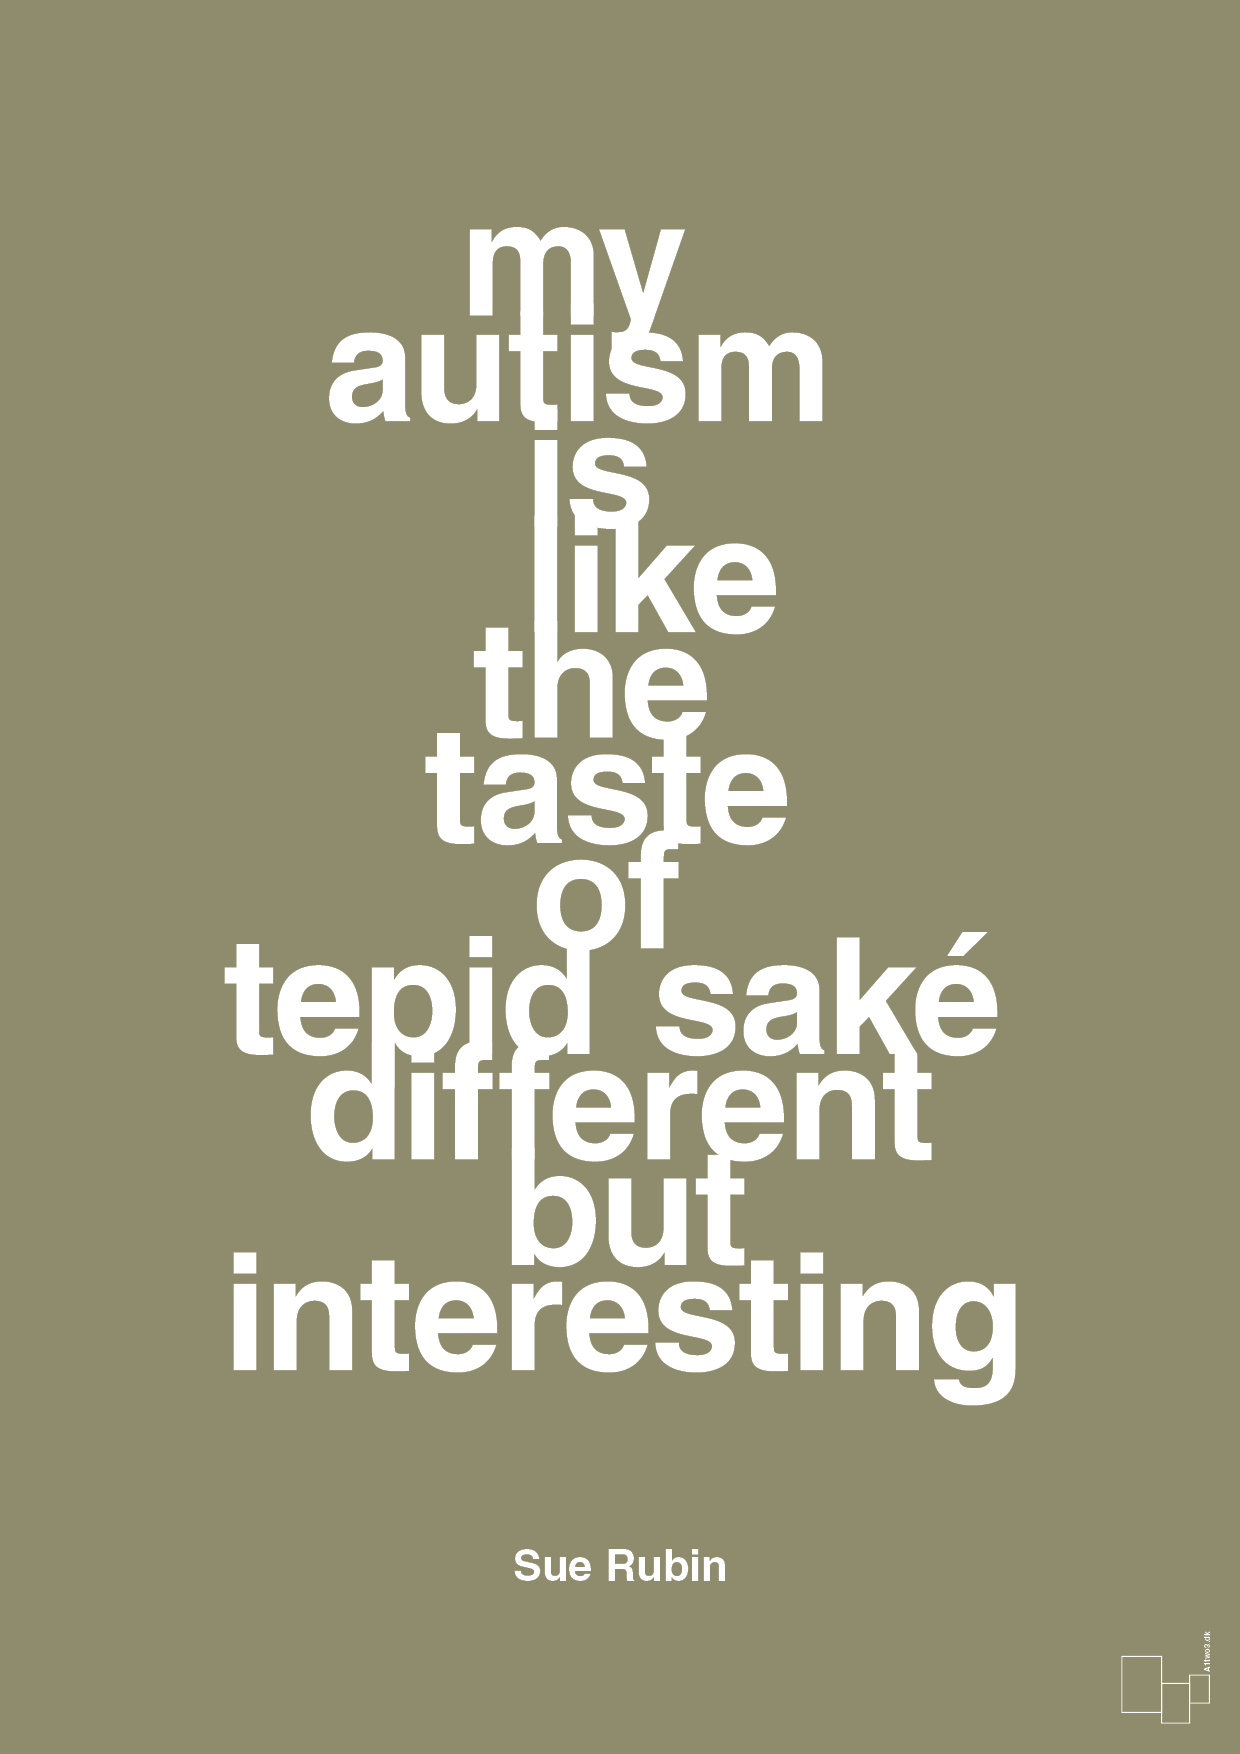 my autism is like the taste of tepid saké different but interesting - Plakat med Samfund i Misty Forrest